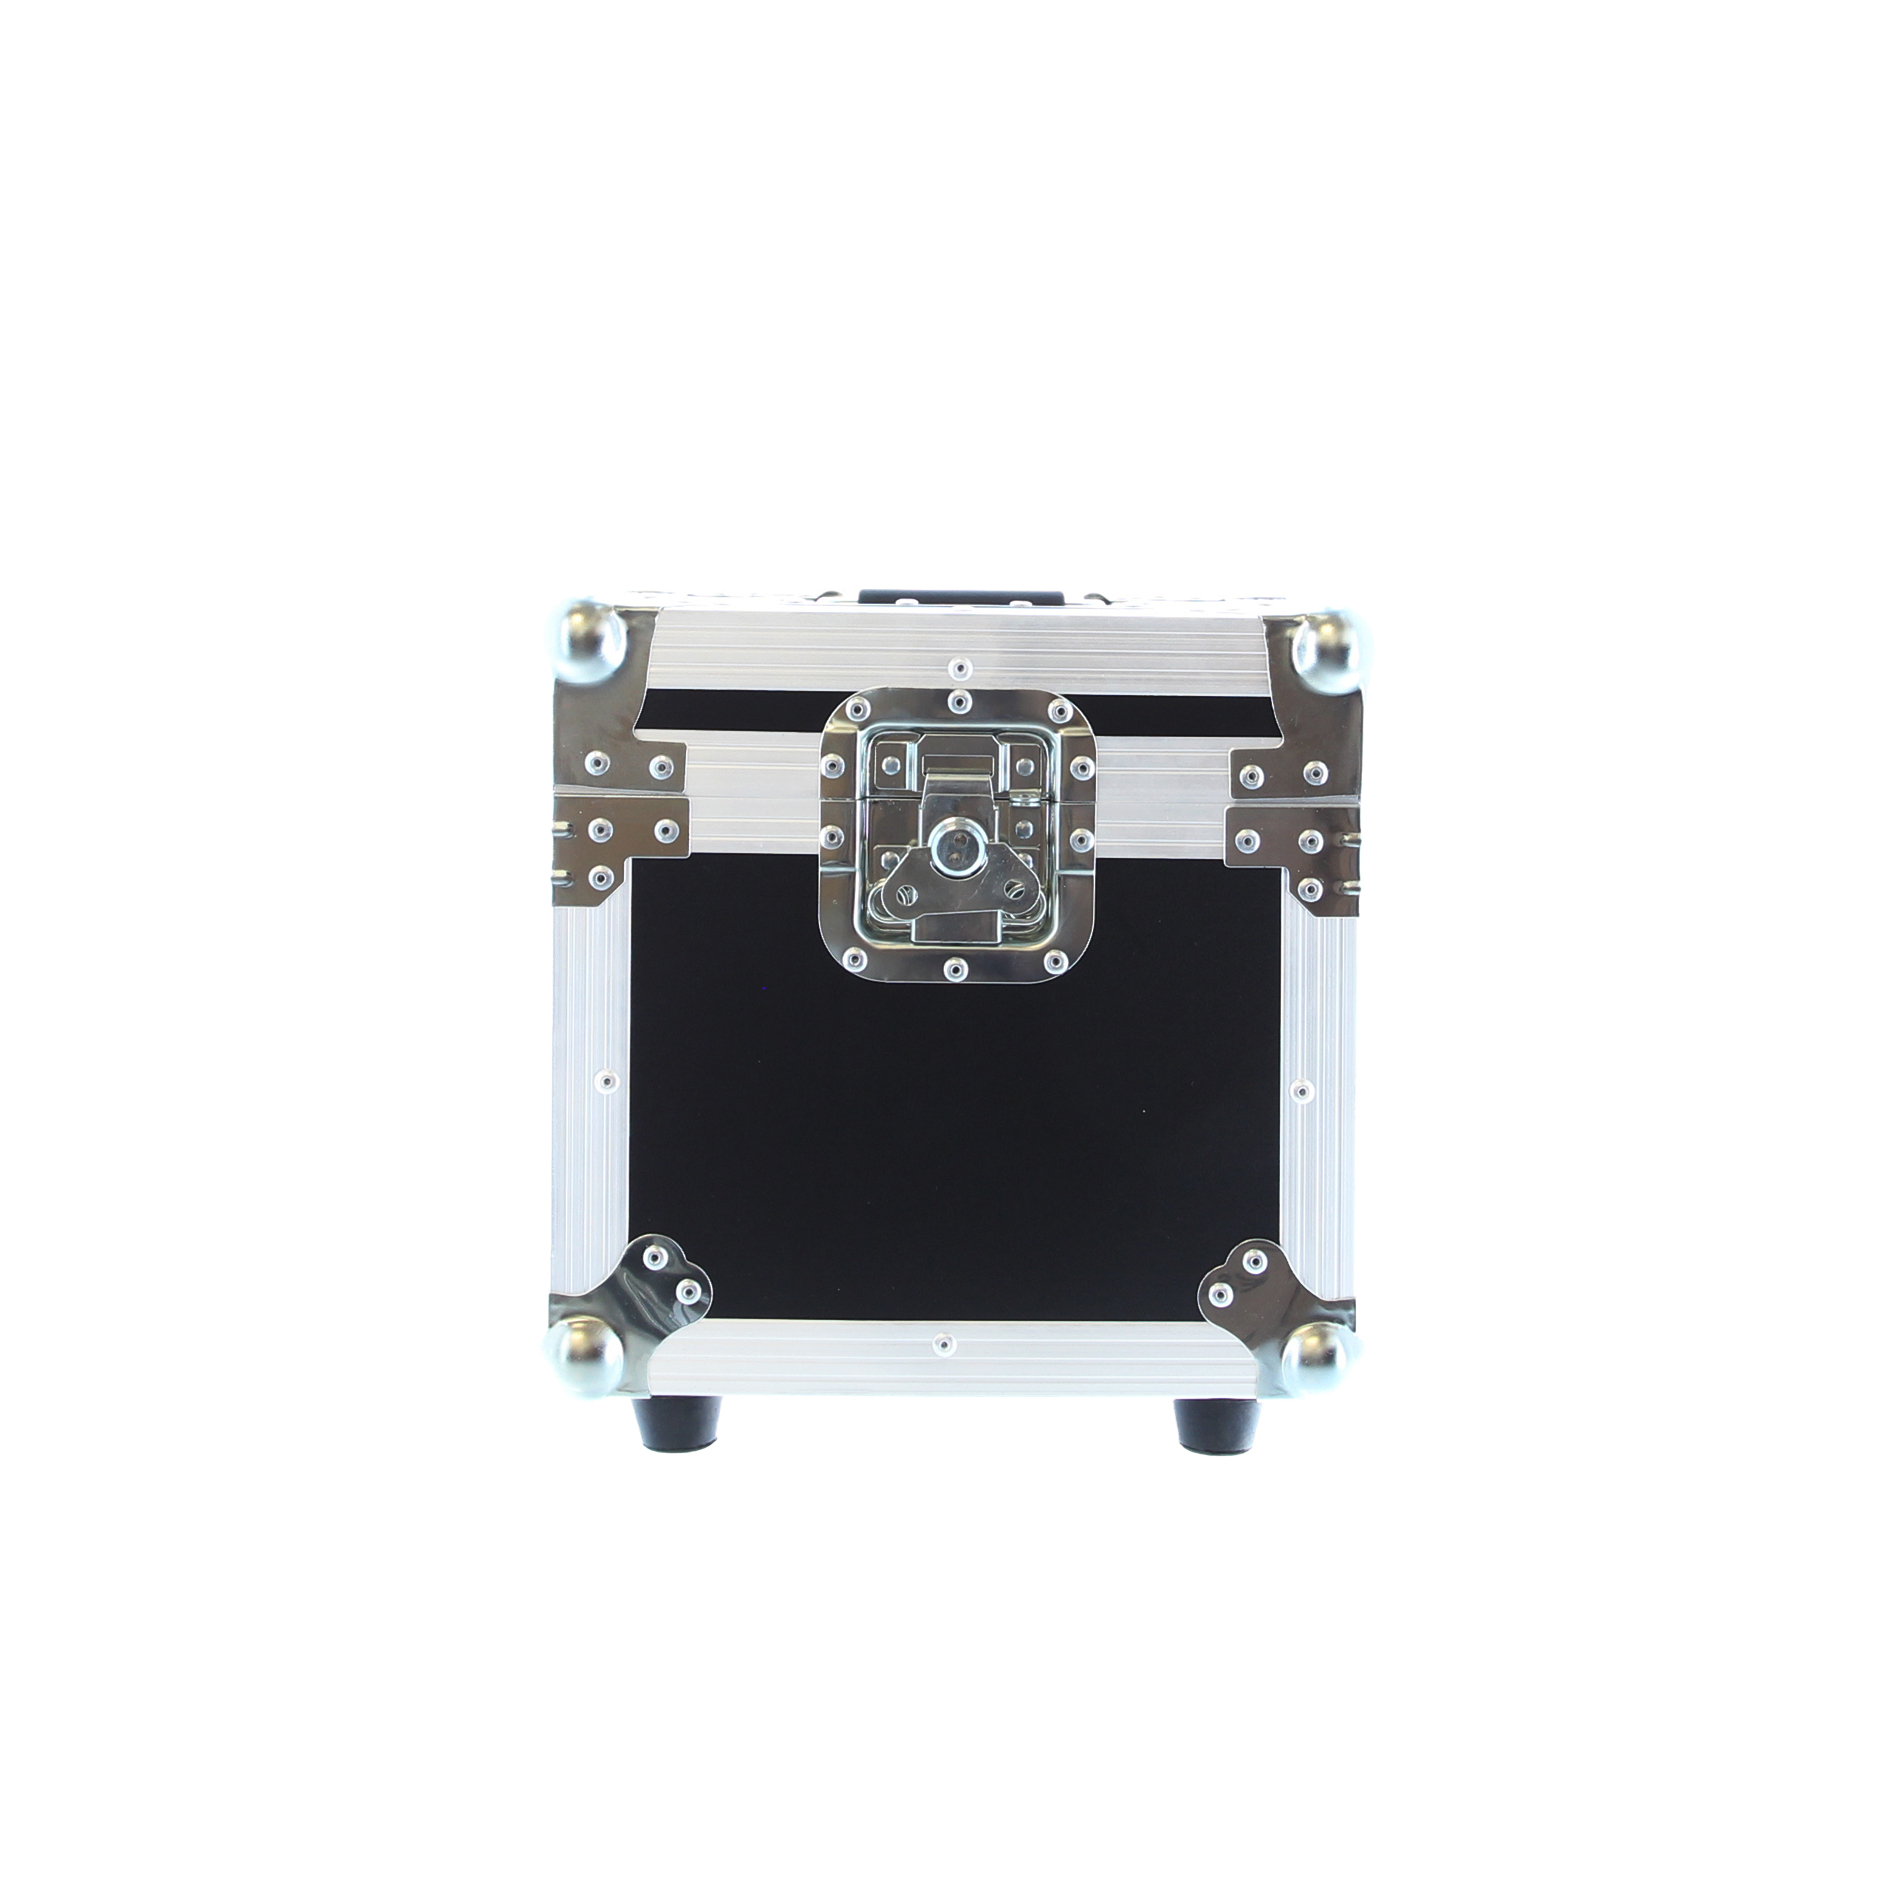 Power Acoustics Fc Pegase - Bag & flightcase for lighting equipment - Variation 2